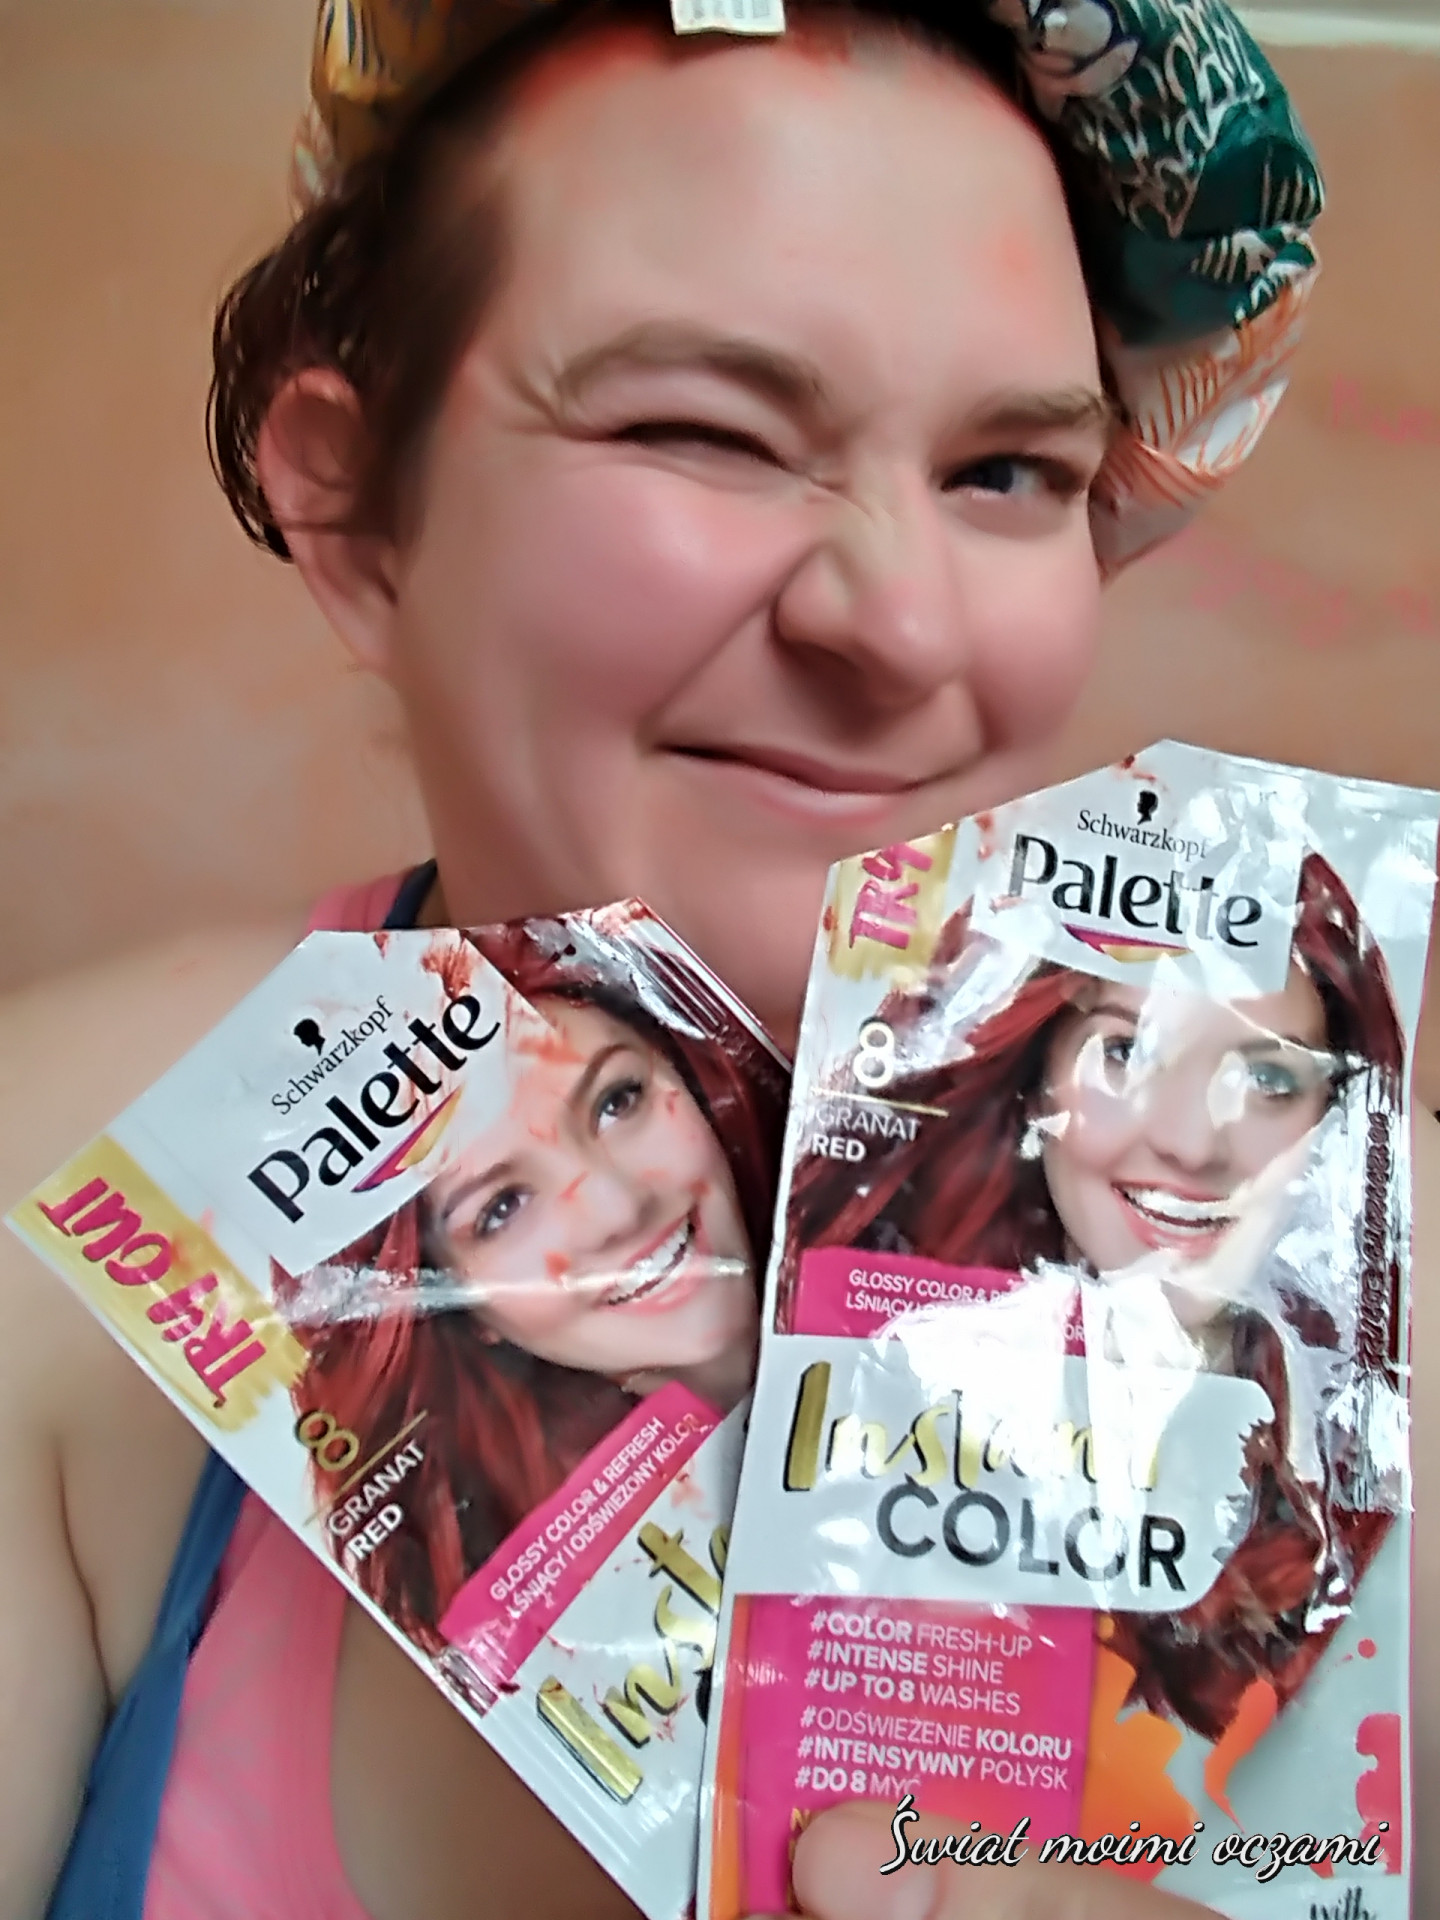 szampon koloryzujący instant color palette czerwień granartu